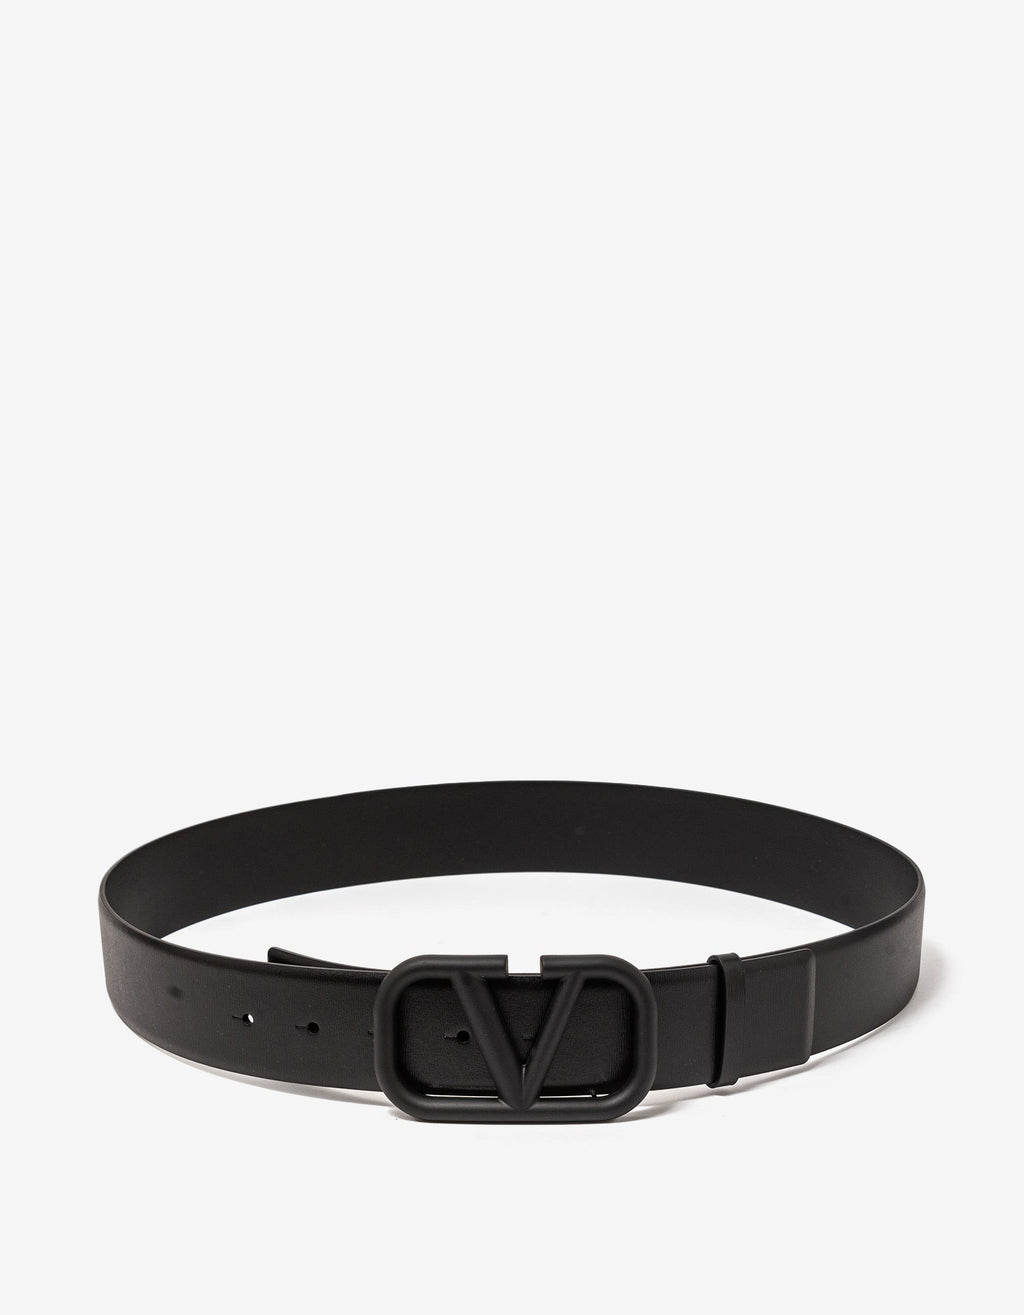 Valentino Garavani Black VLogo Signature Belt 40mm